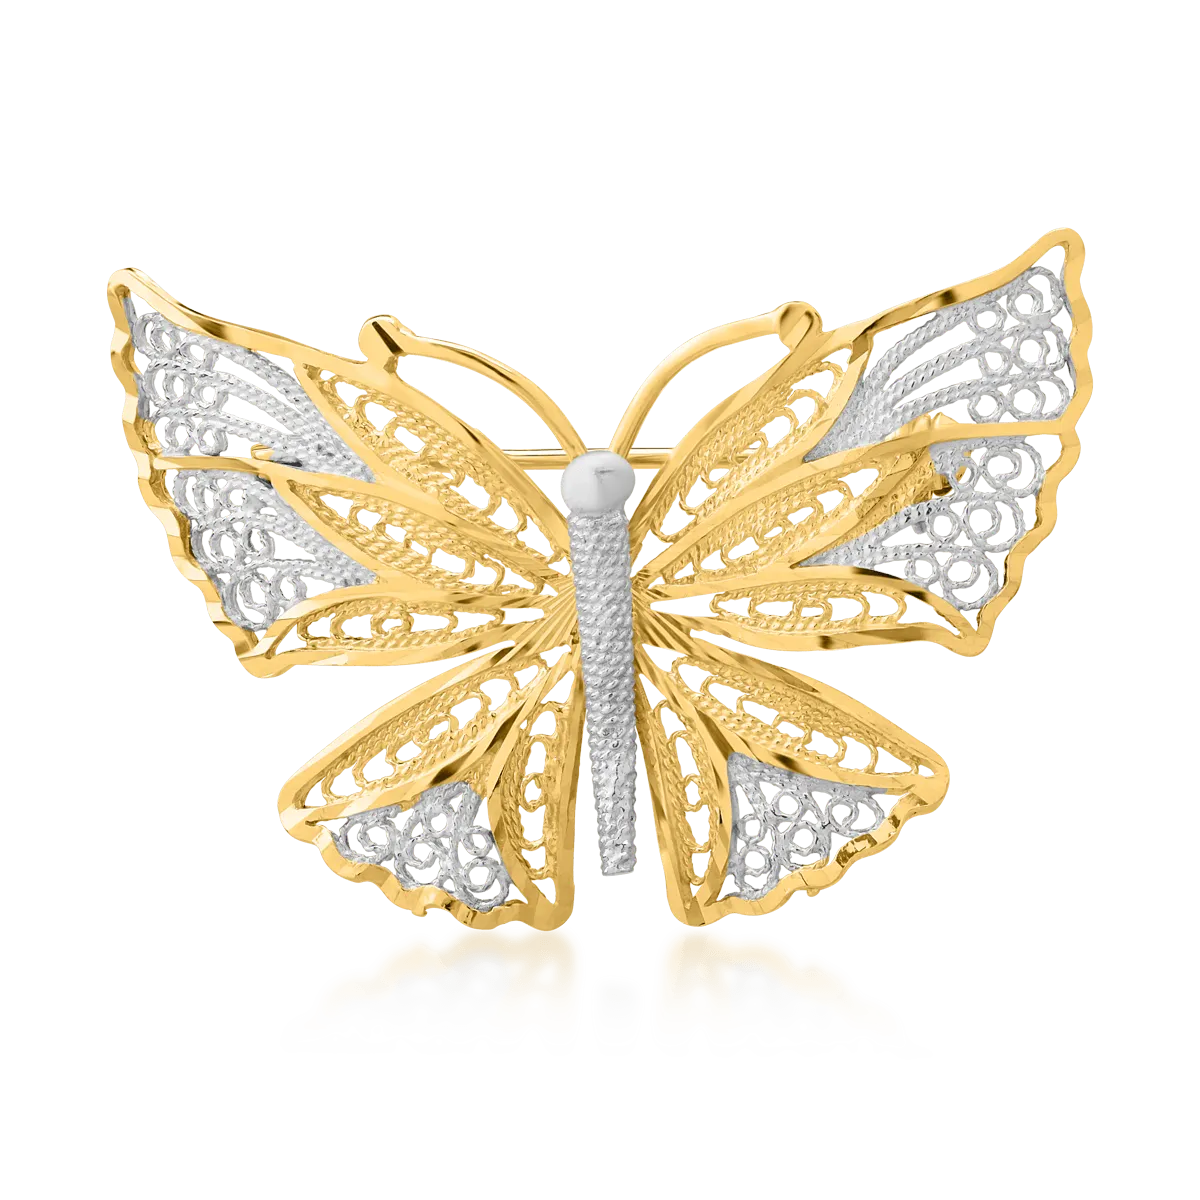 Brosha pillangó arany-sárga 14k arany